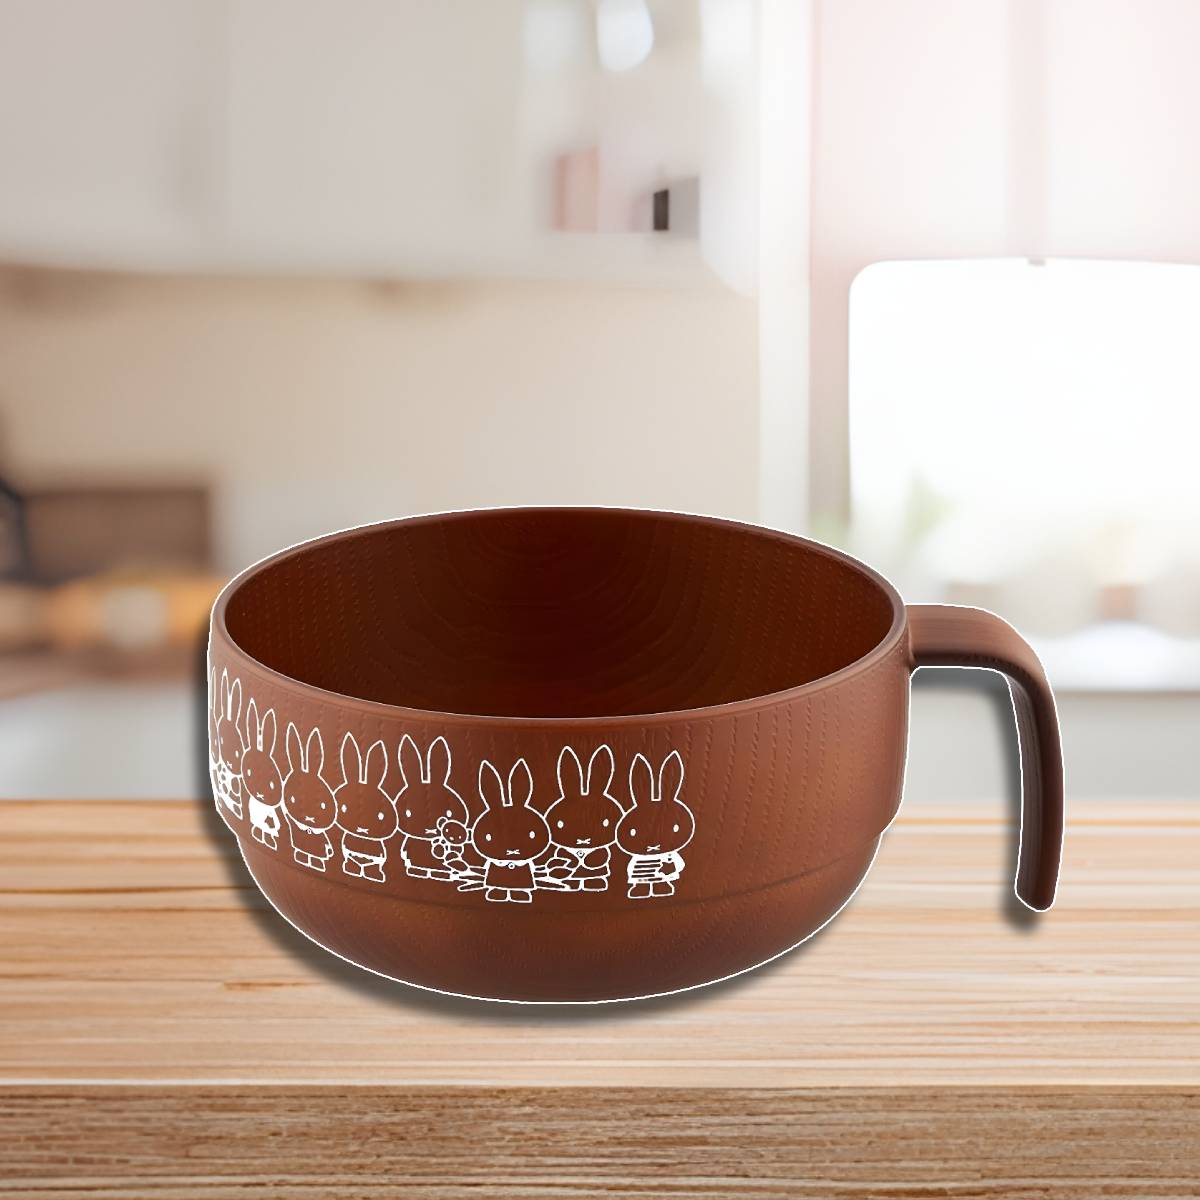 Soup Mug Wood Grain Miffy (Japan Edition)